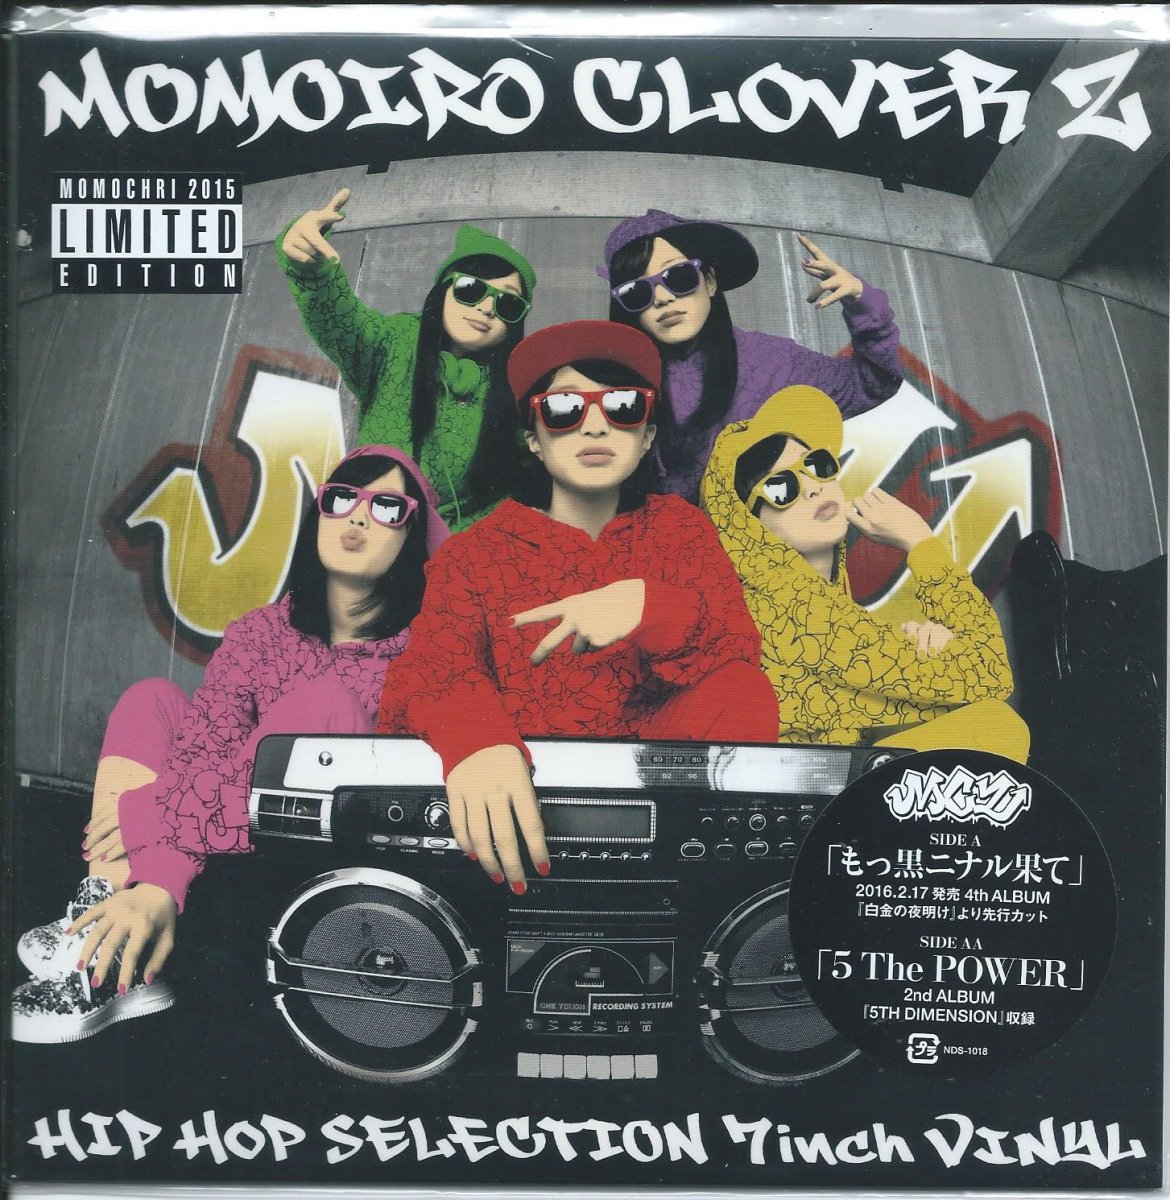 ももいろクローバーz Momoiro Clover Z もっ黒ニナル果て Prod By Muro 7 Hip Tank Records